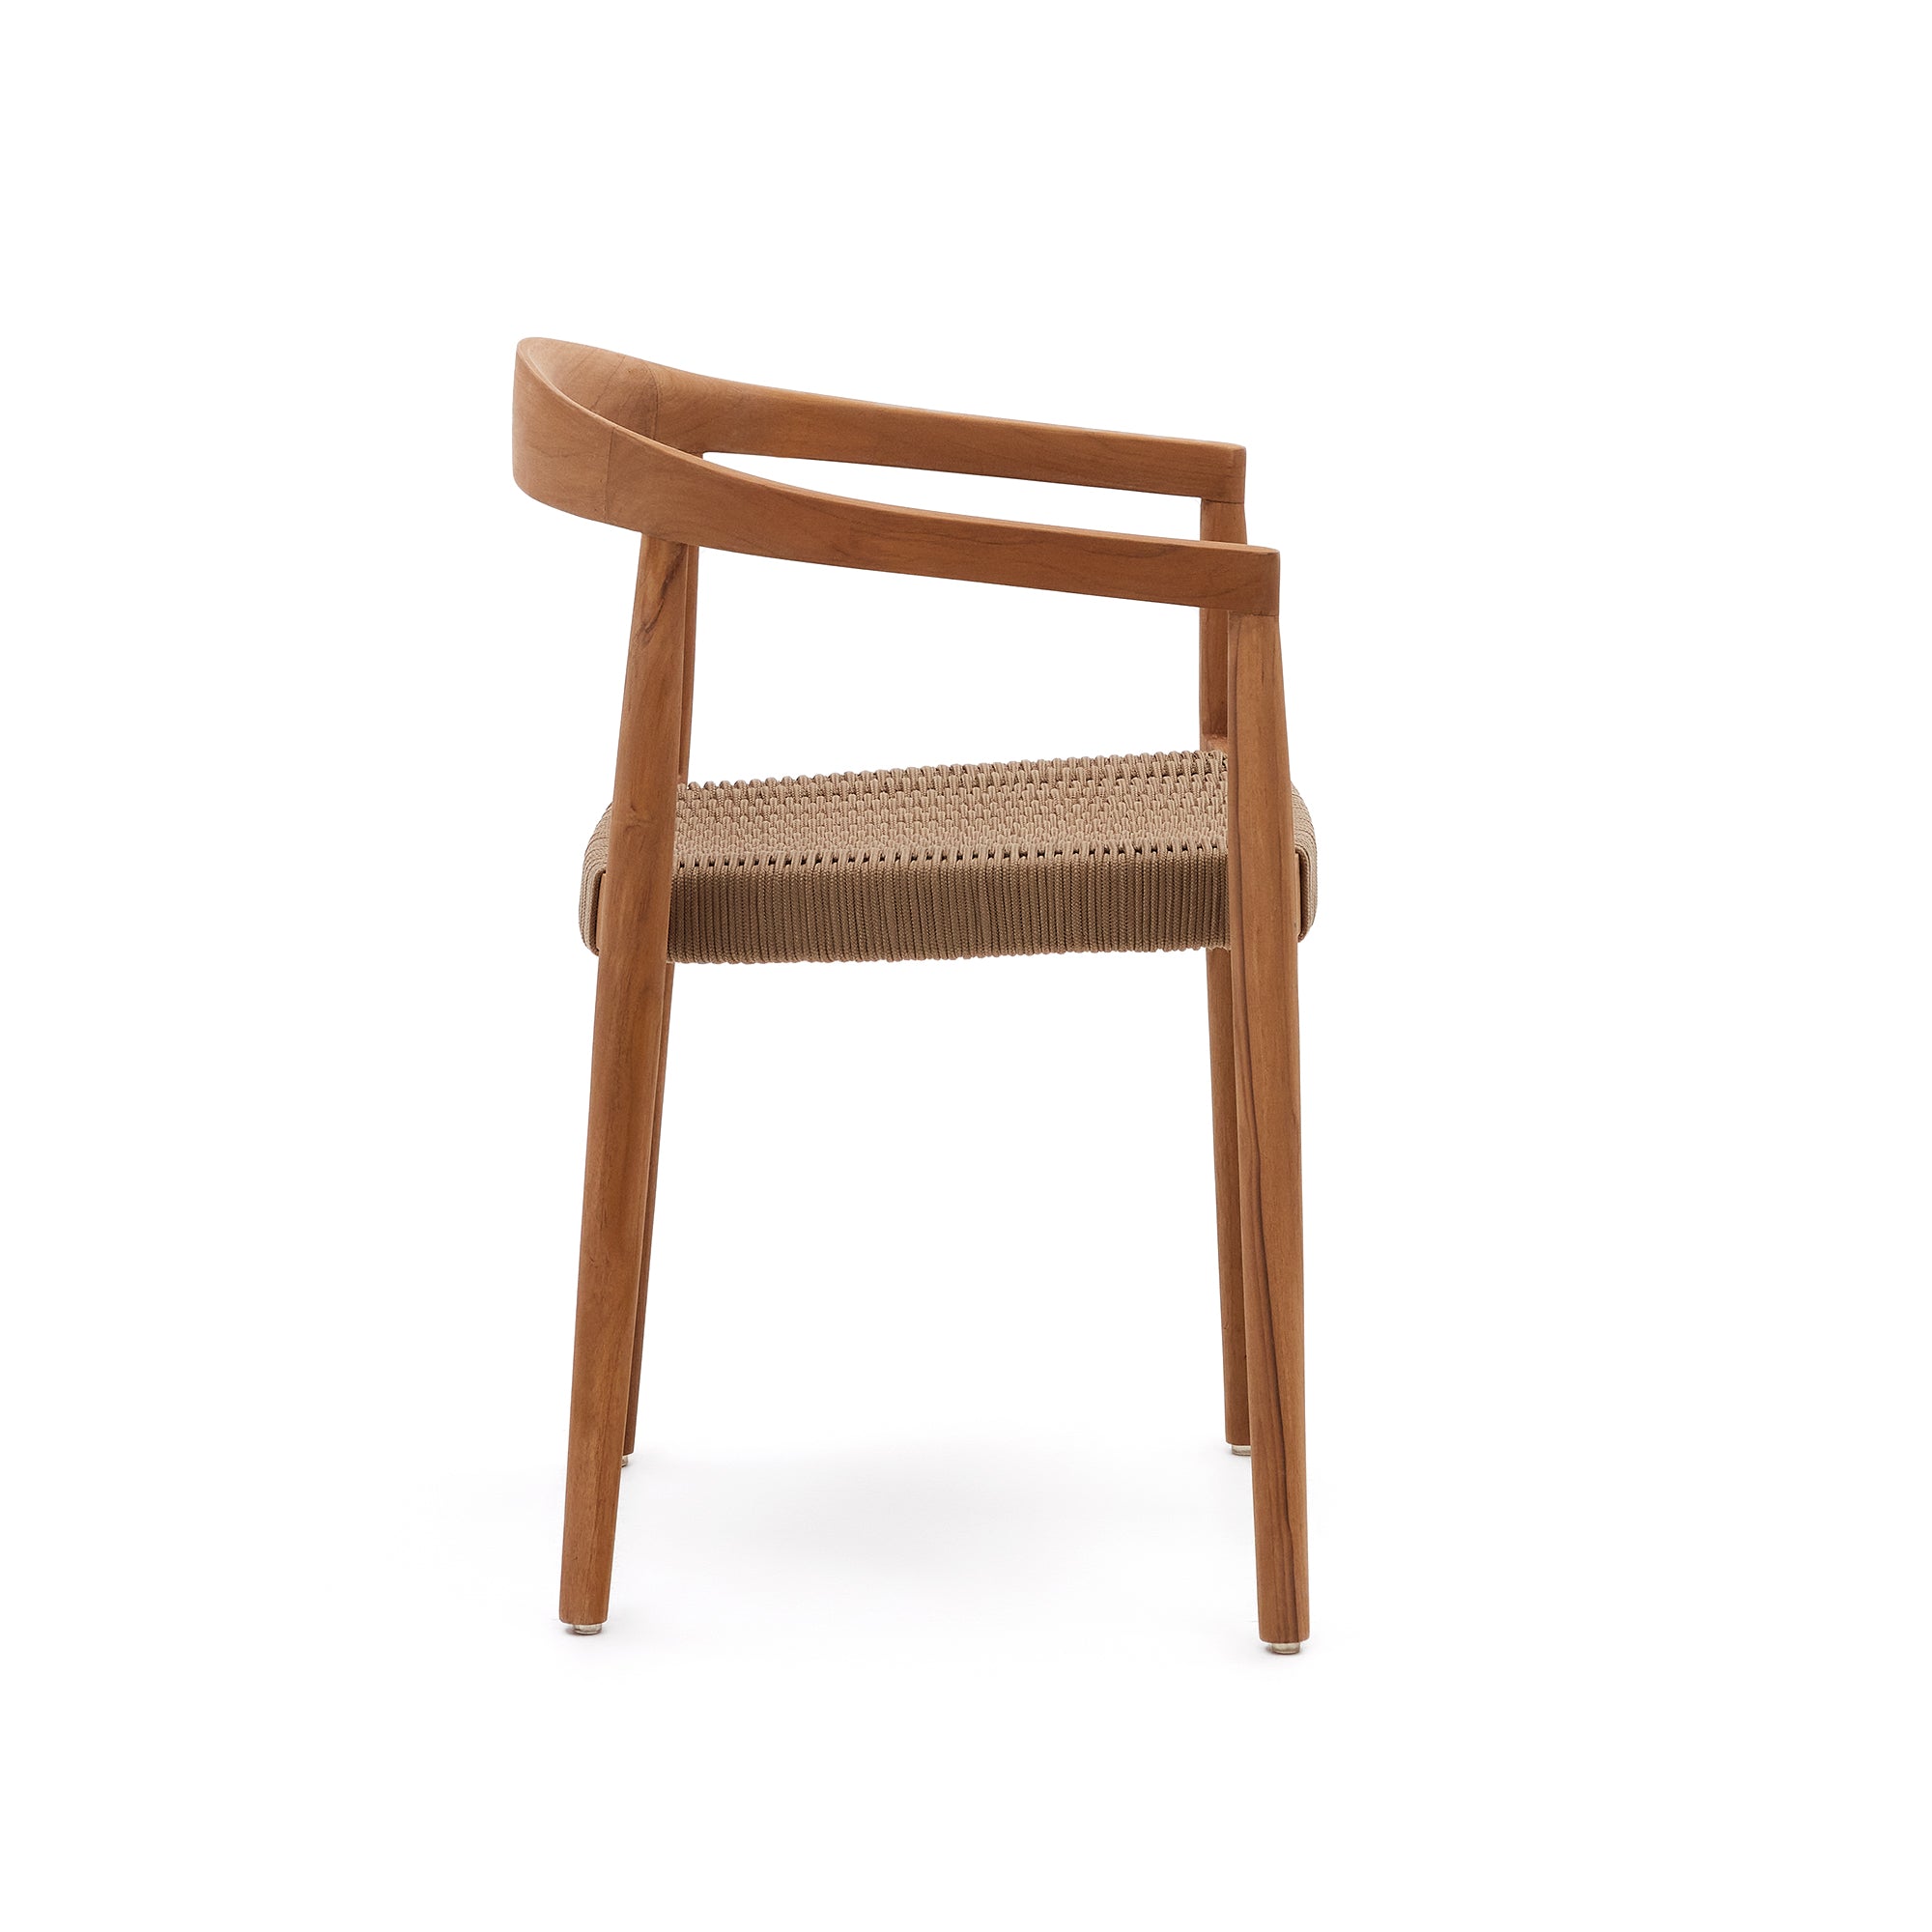 Ydalia egymásba rakható kültéri szék tömör teakfából, természetes kivitelben, bézs színű kötéllel.